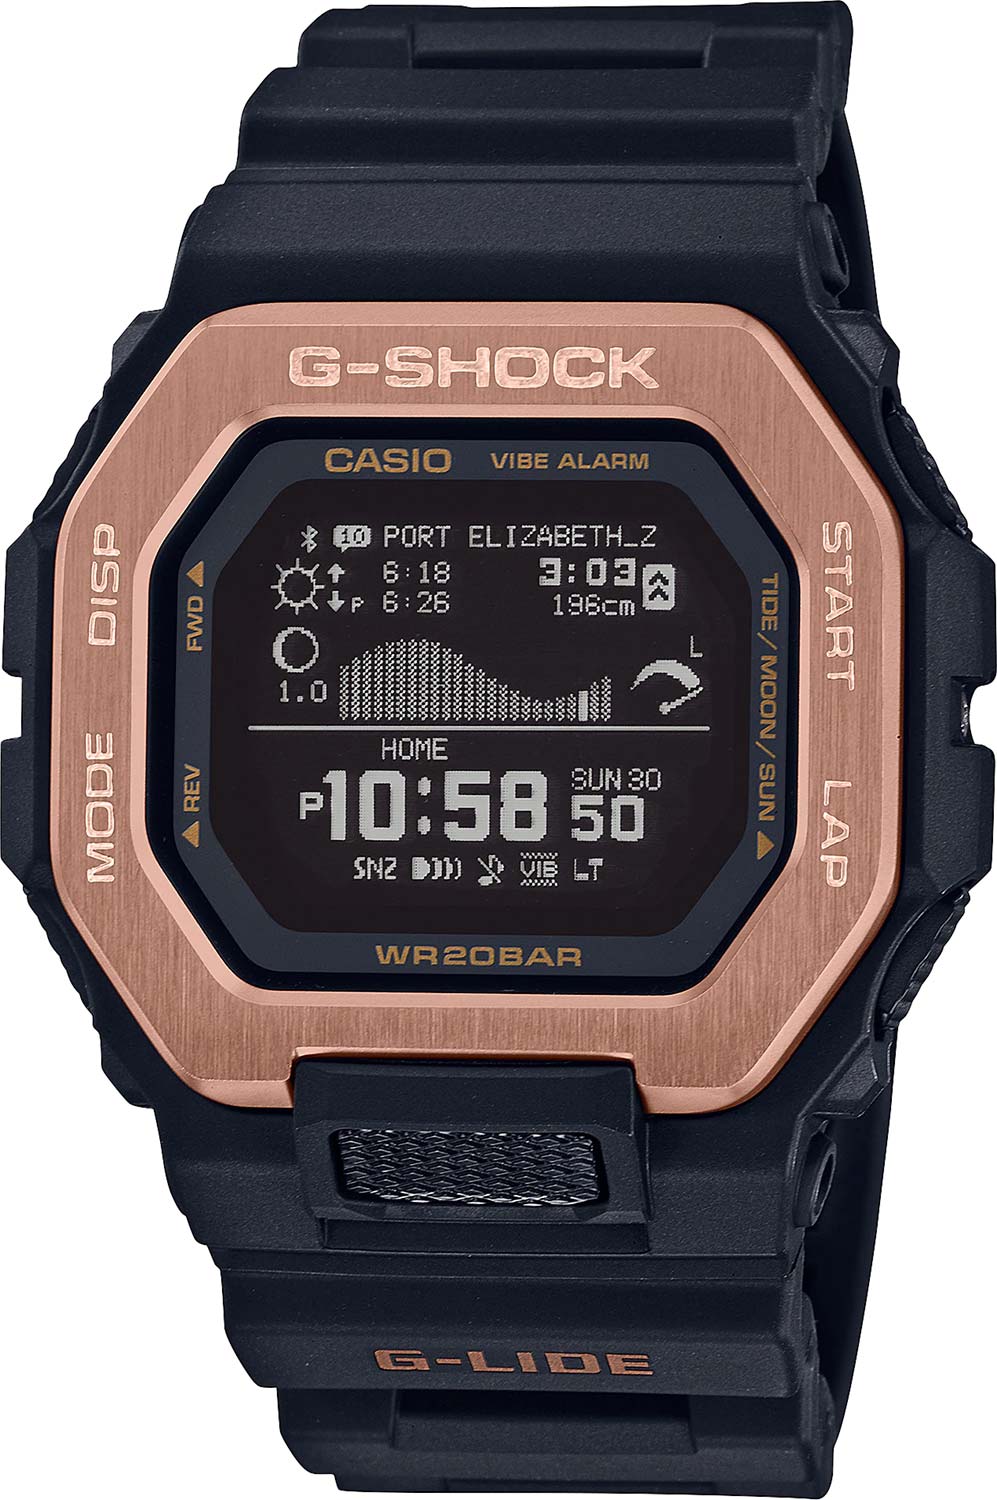     Casio G-SHOCK GBX-100NS-4ER  